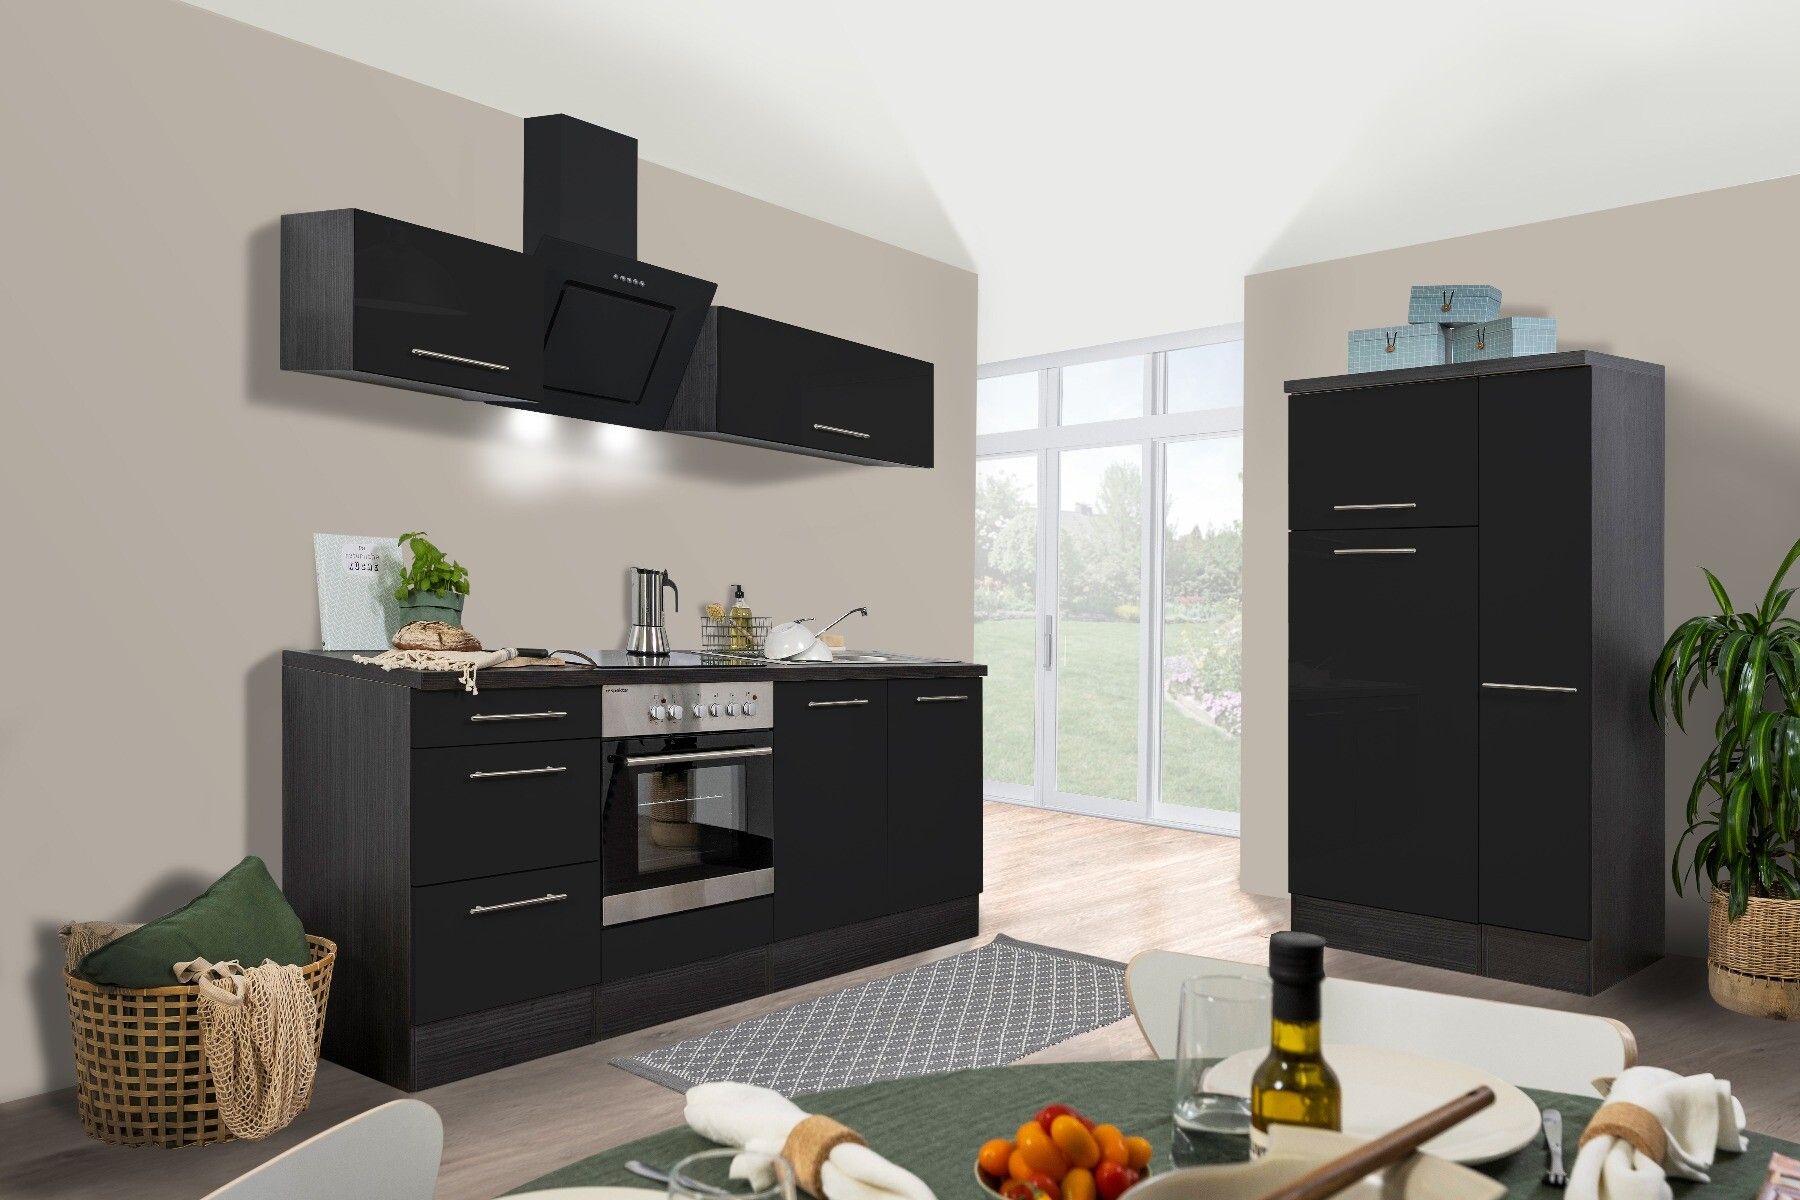 Zwarte design keuken met donkere opbouw opgesteld in twee delen